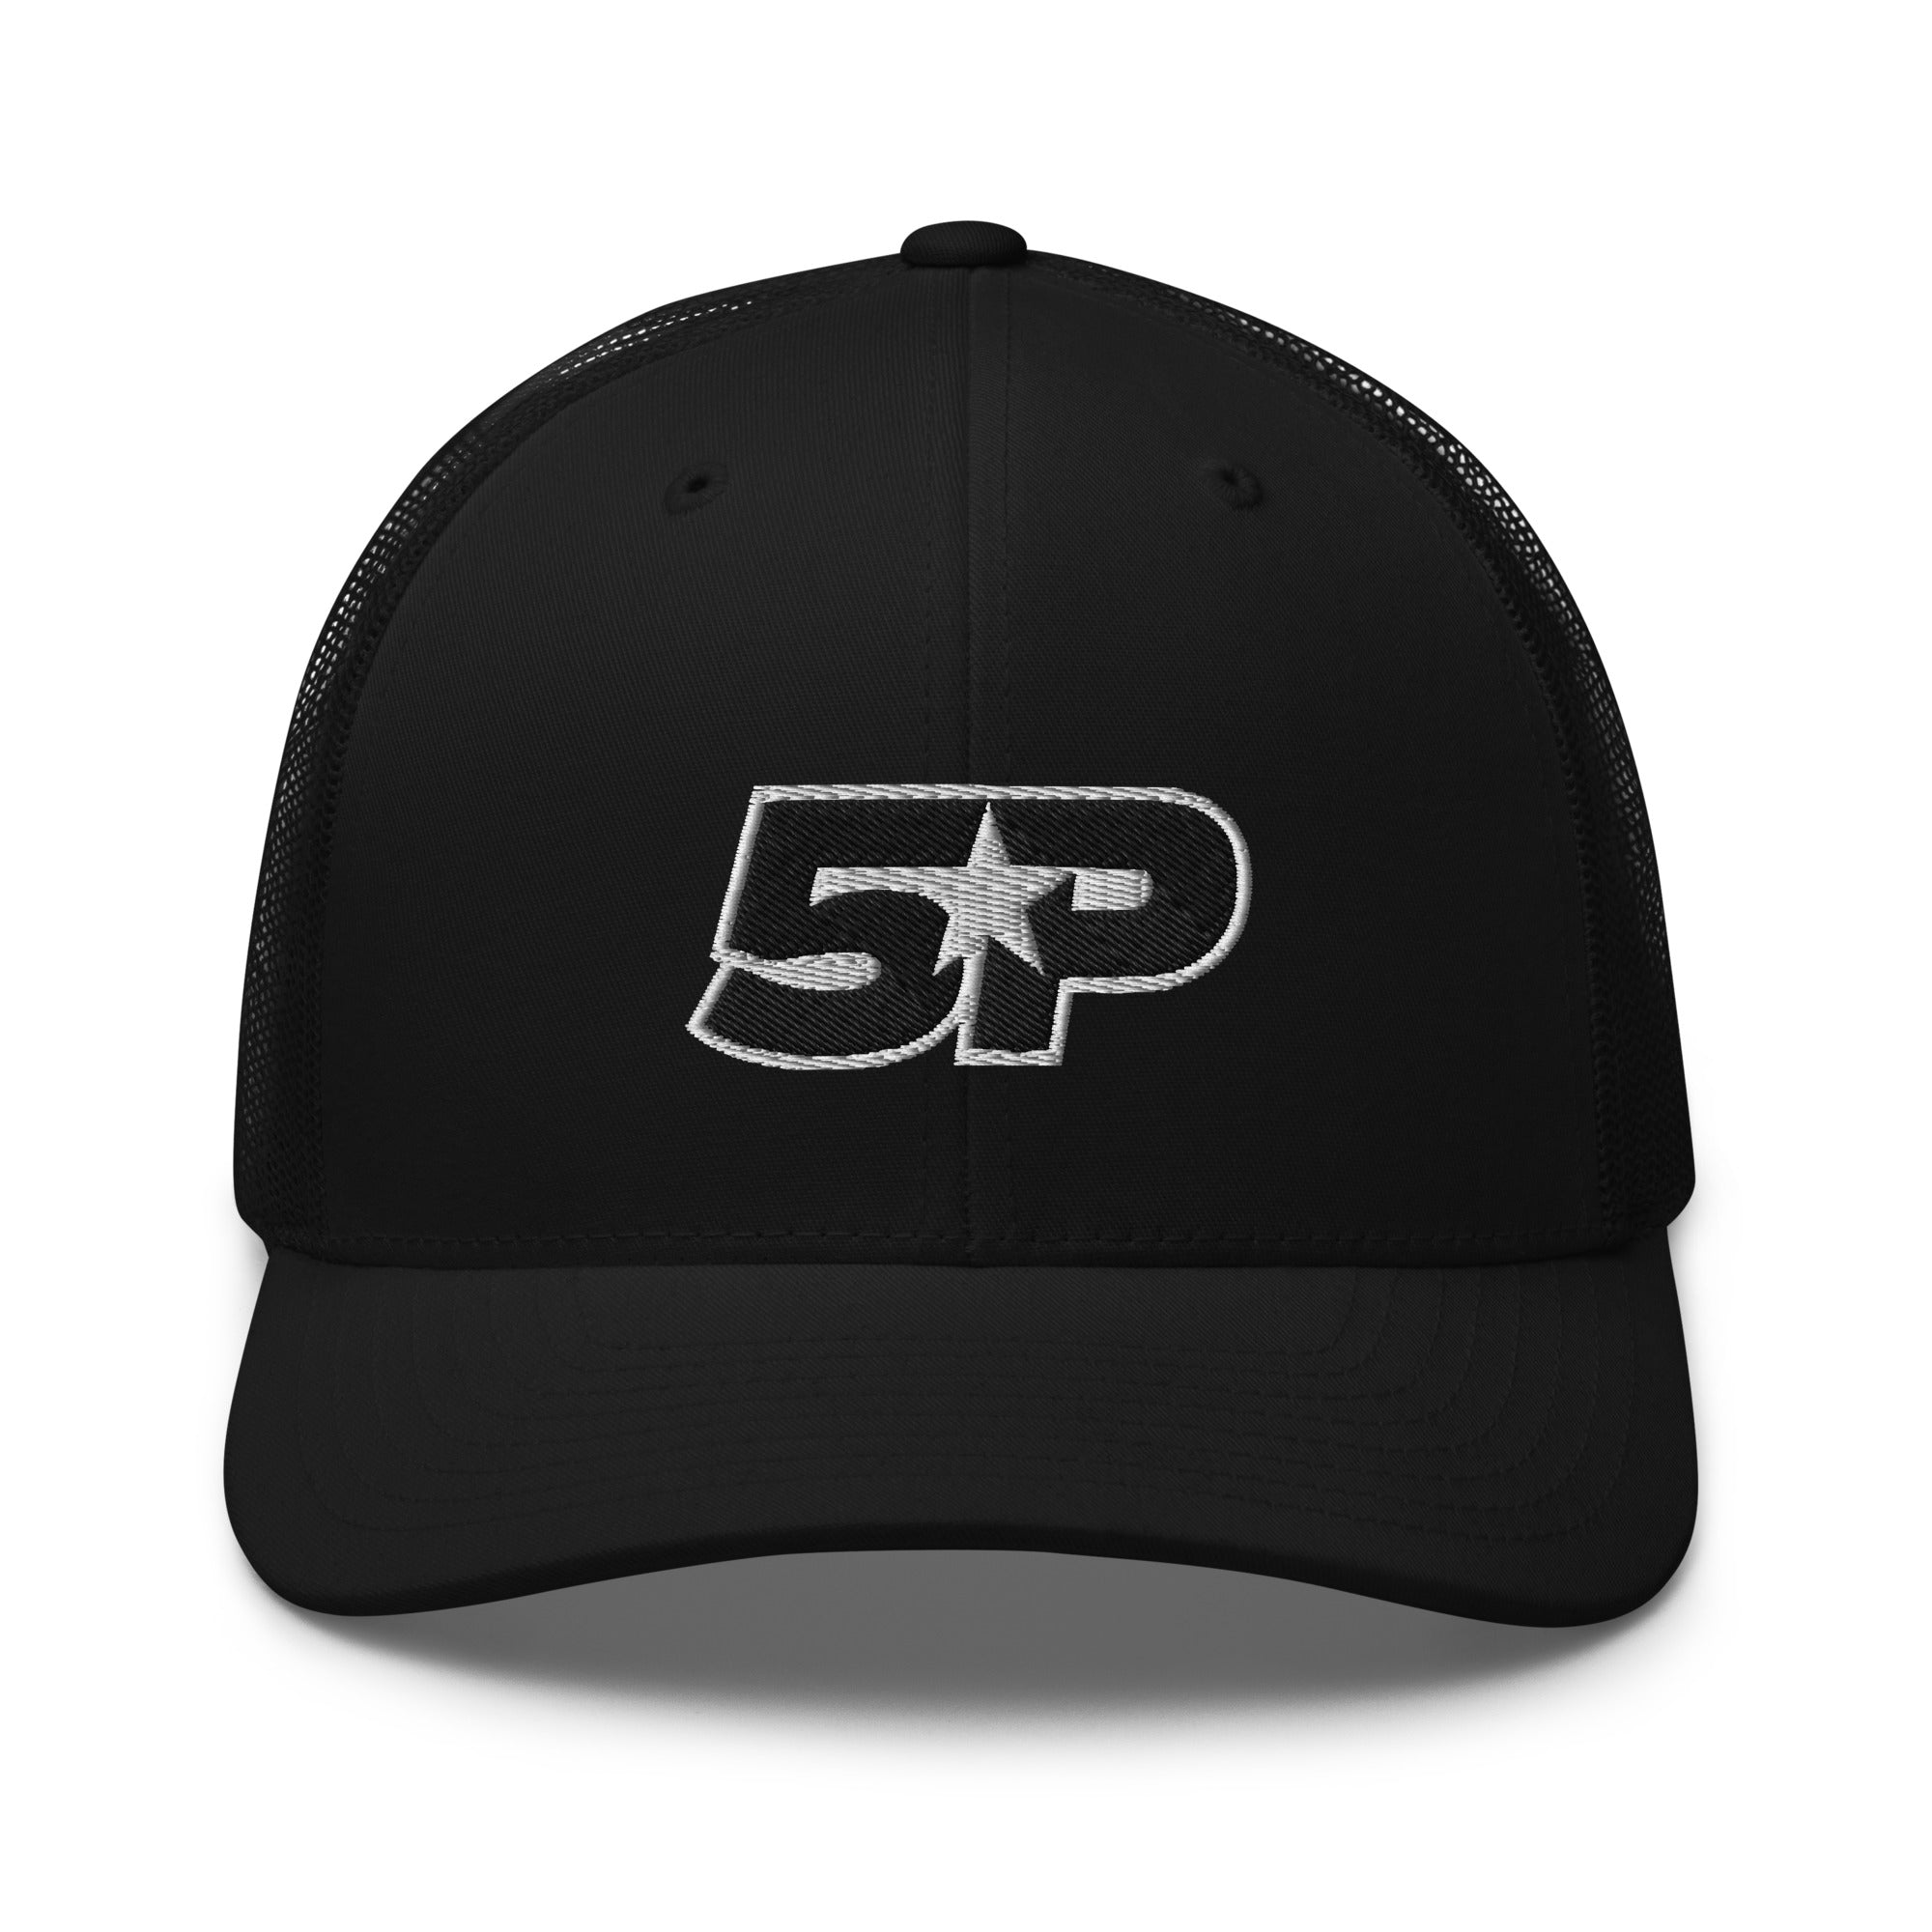 5P Trucker Cap